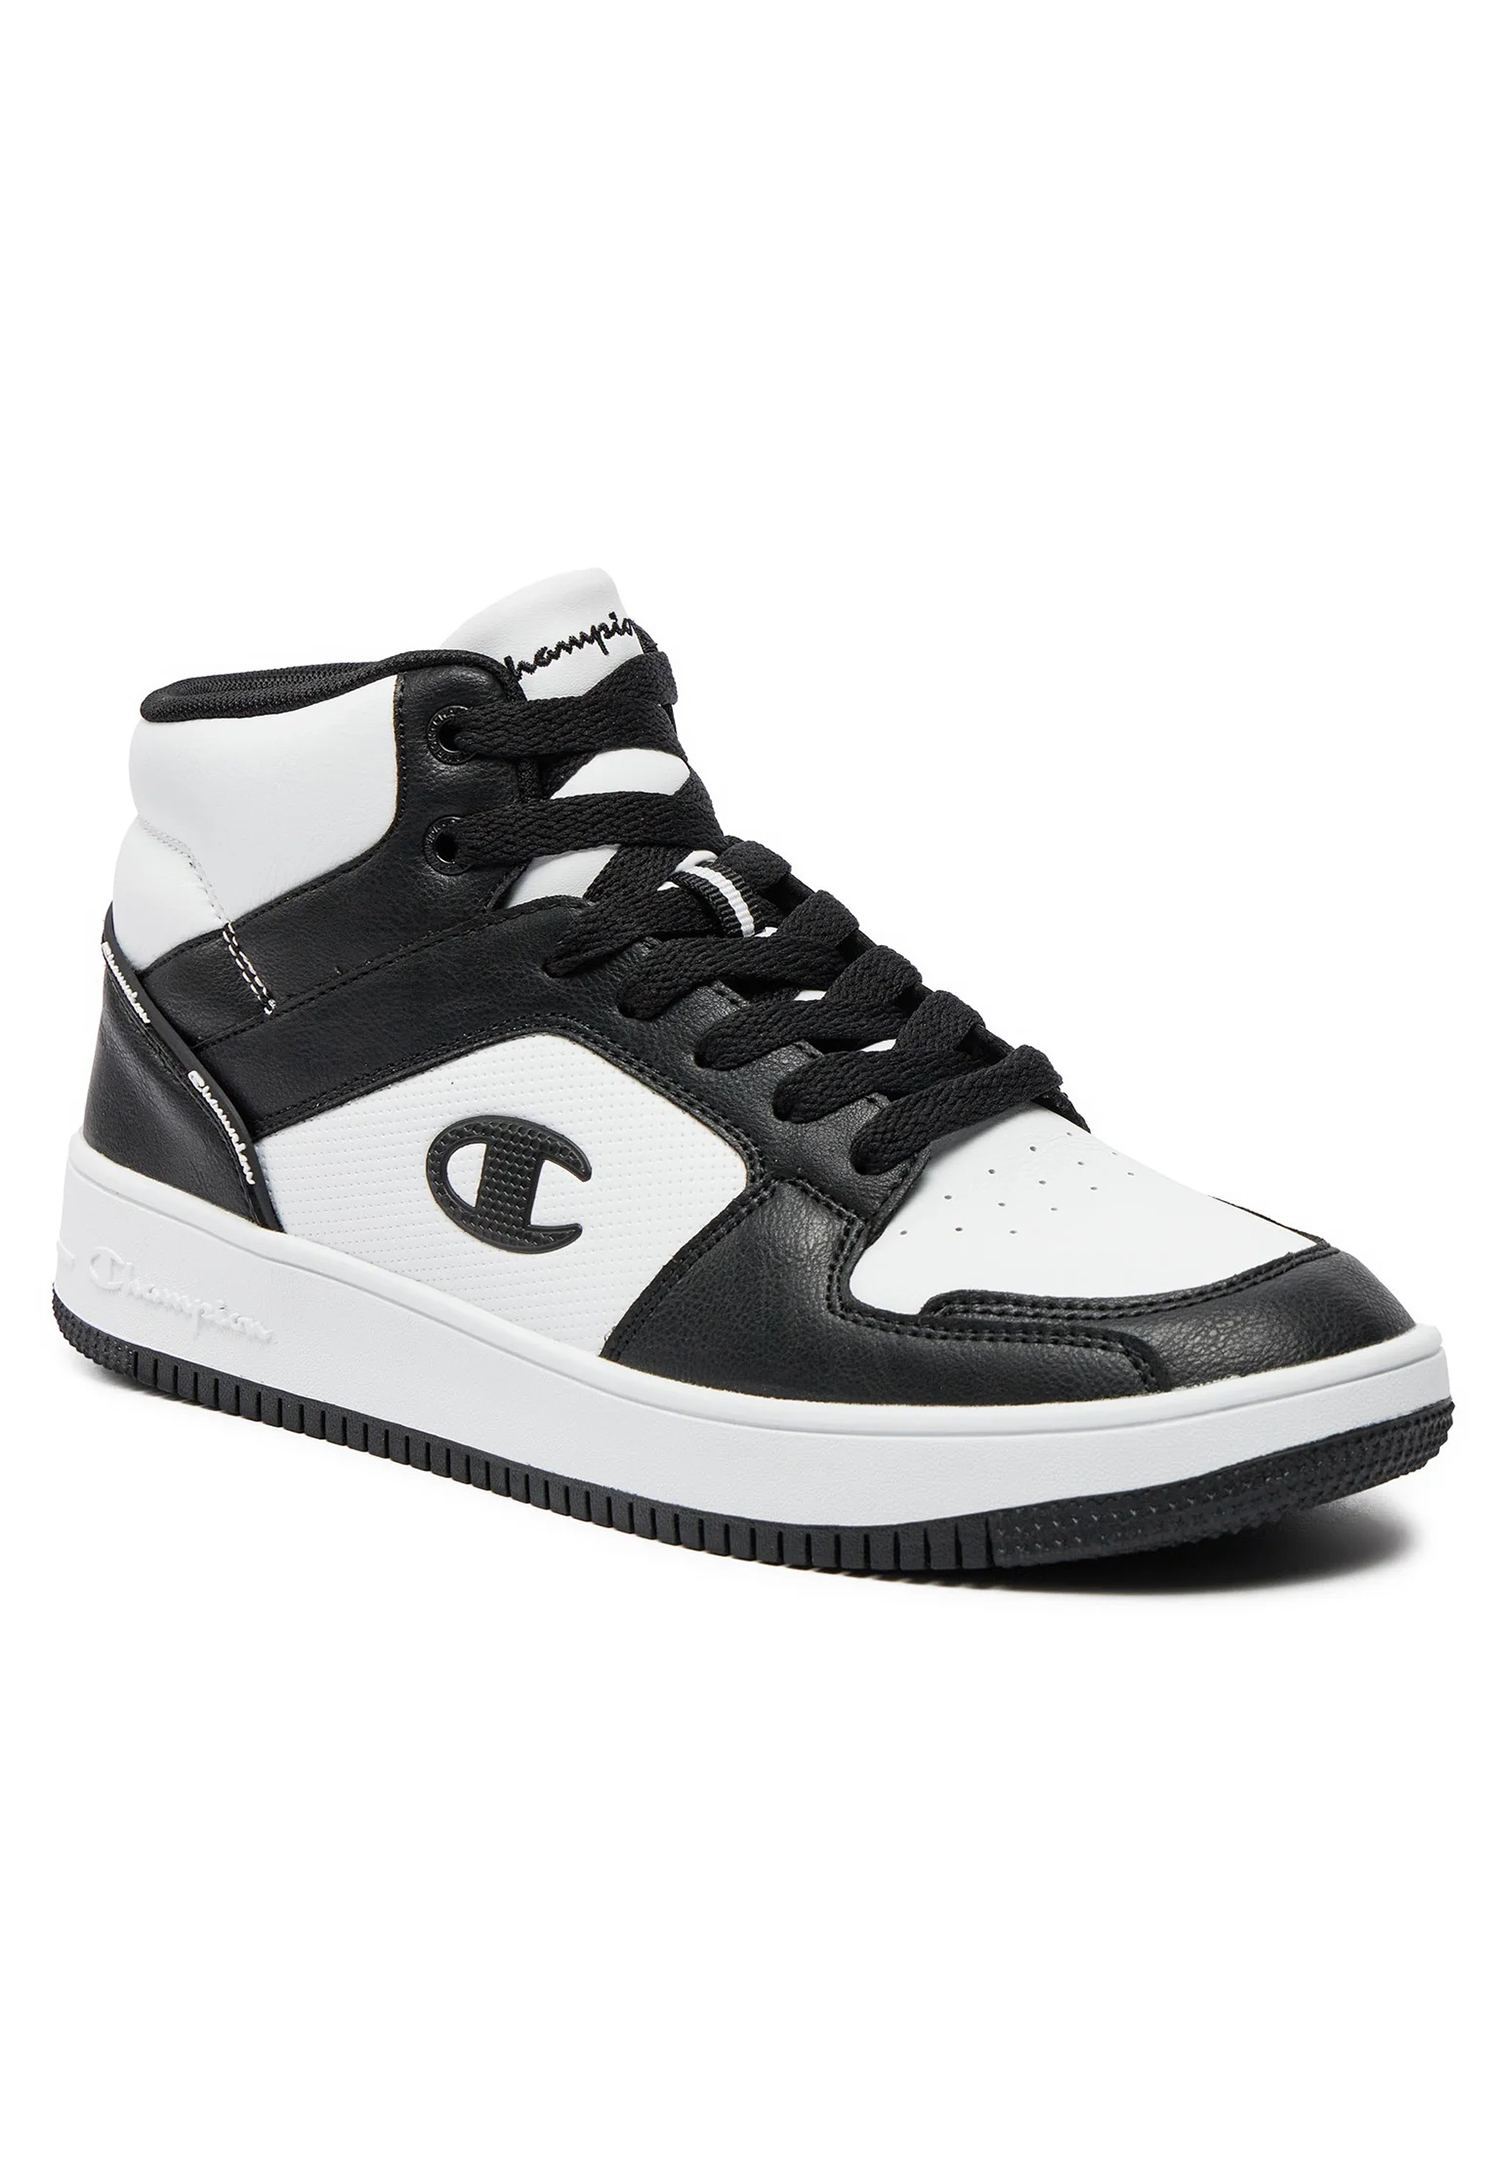 Champion REBOUND 2.0 MID Herren Sneaker S21907-CHA-WW019  weiß/schwarz